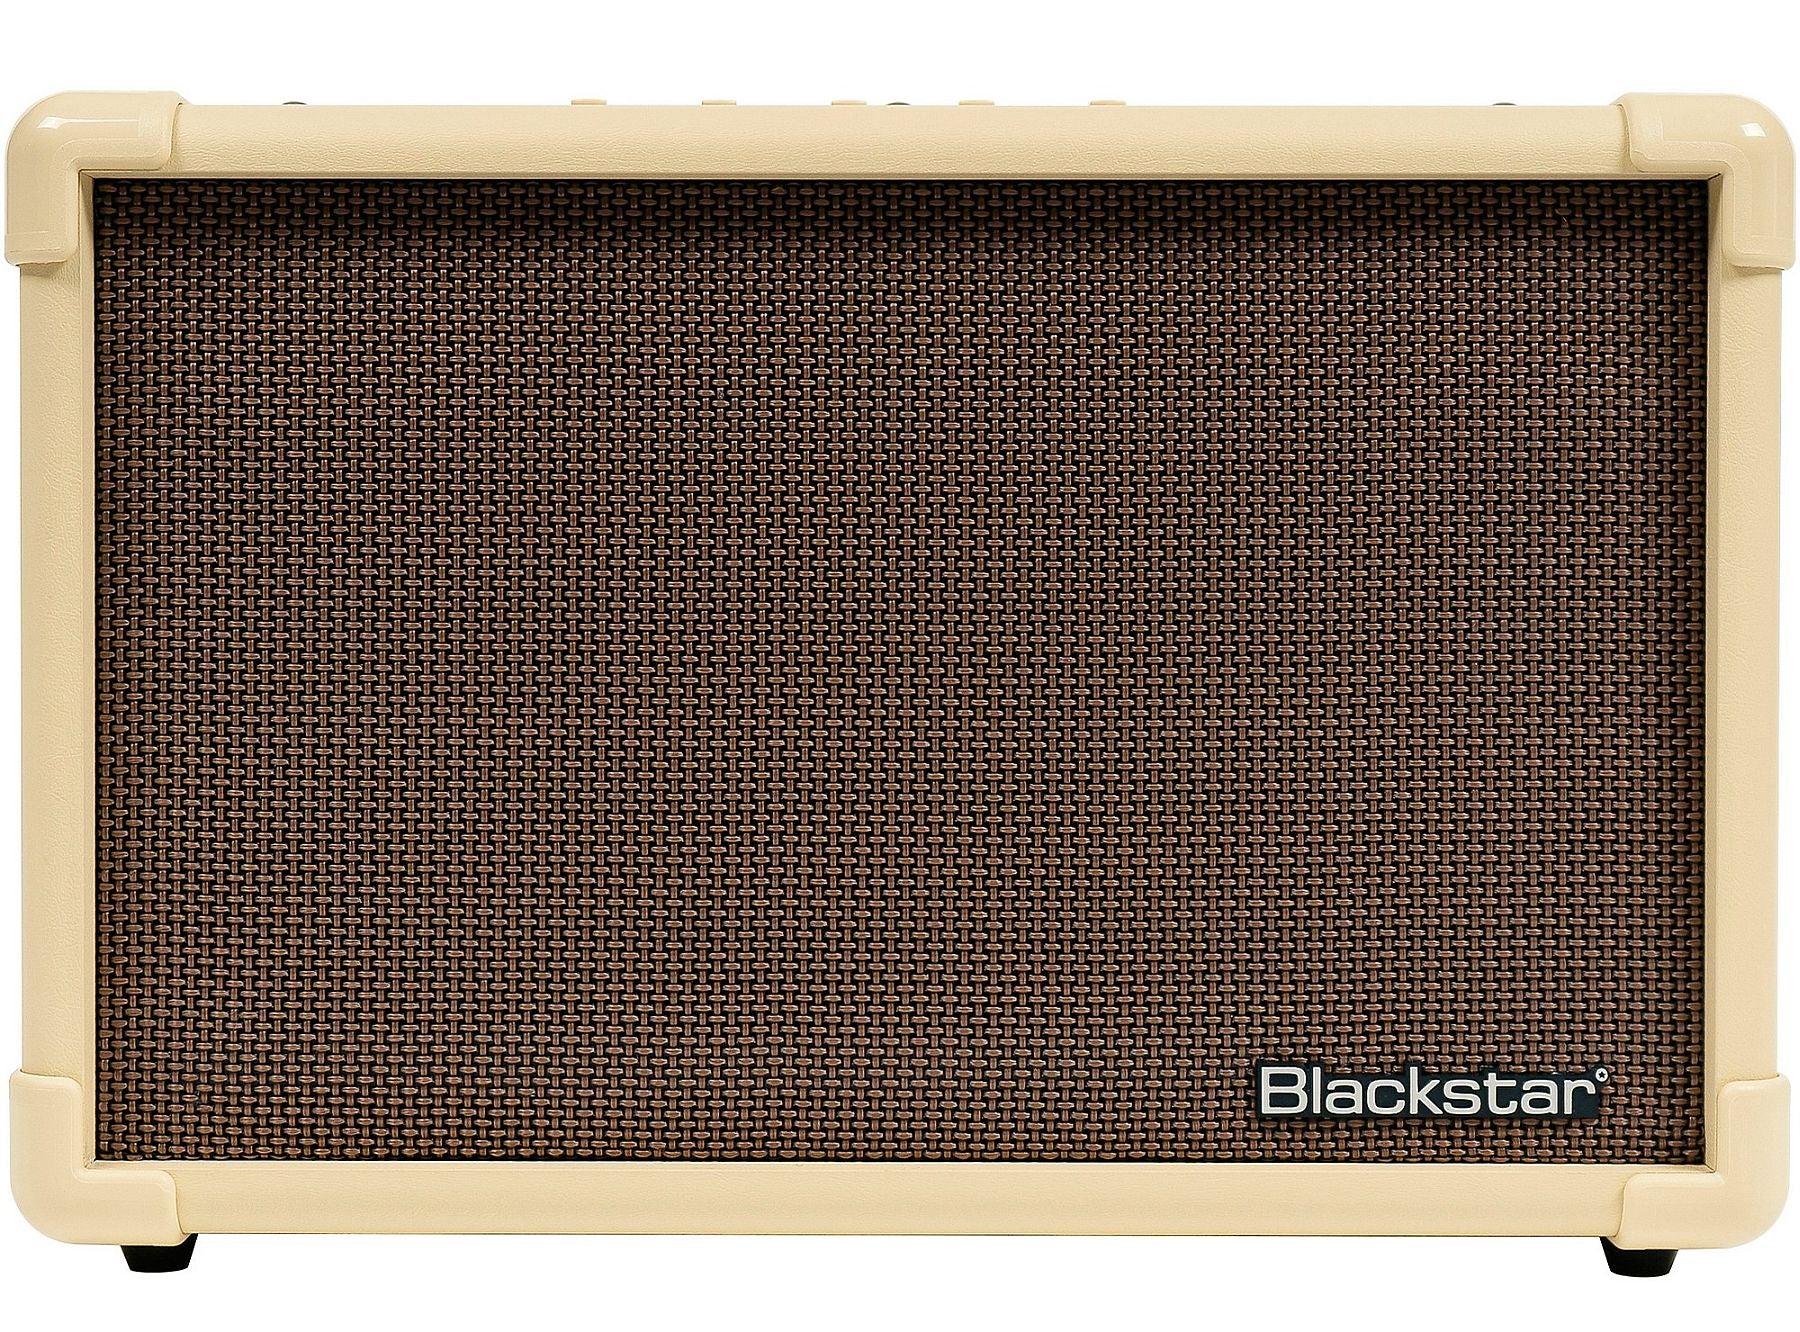 Blackstar Acoustic:Core 30 Acoustic Amplifier